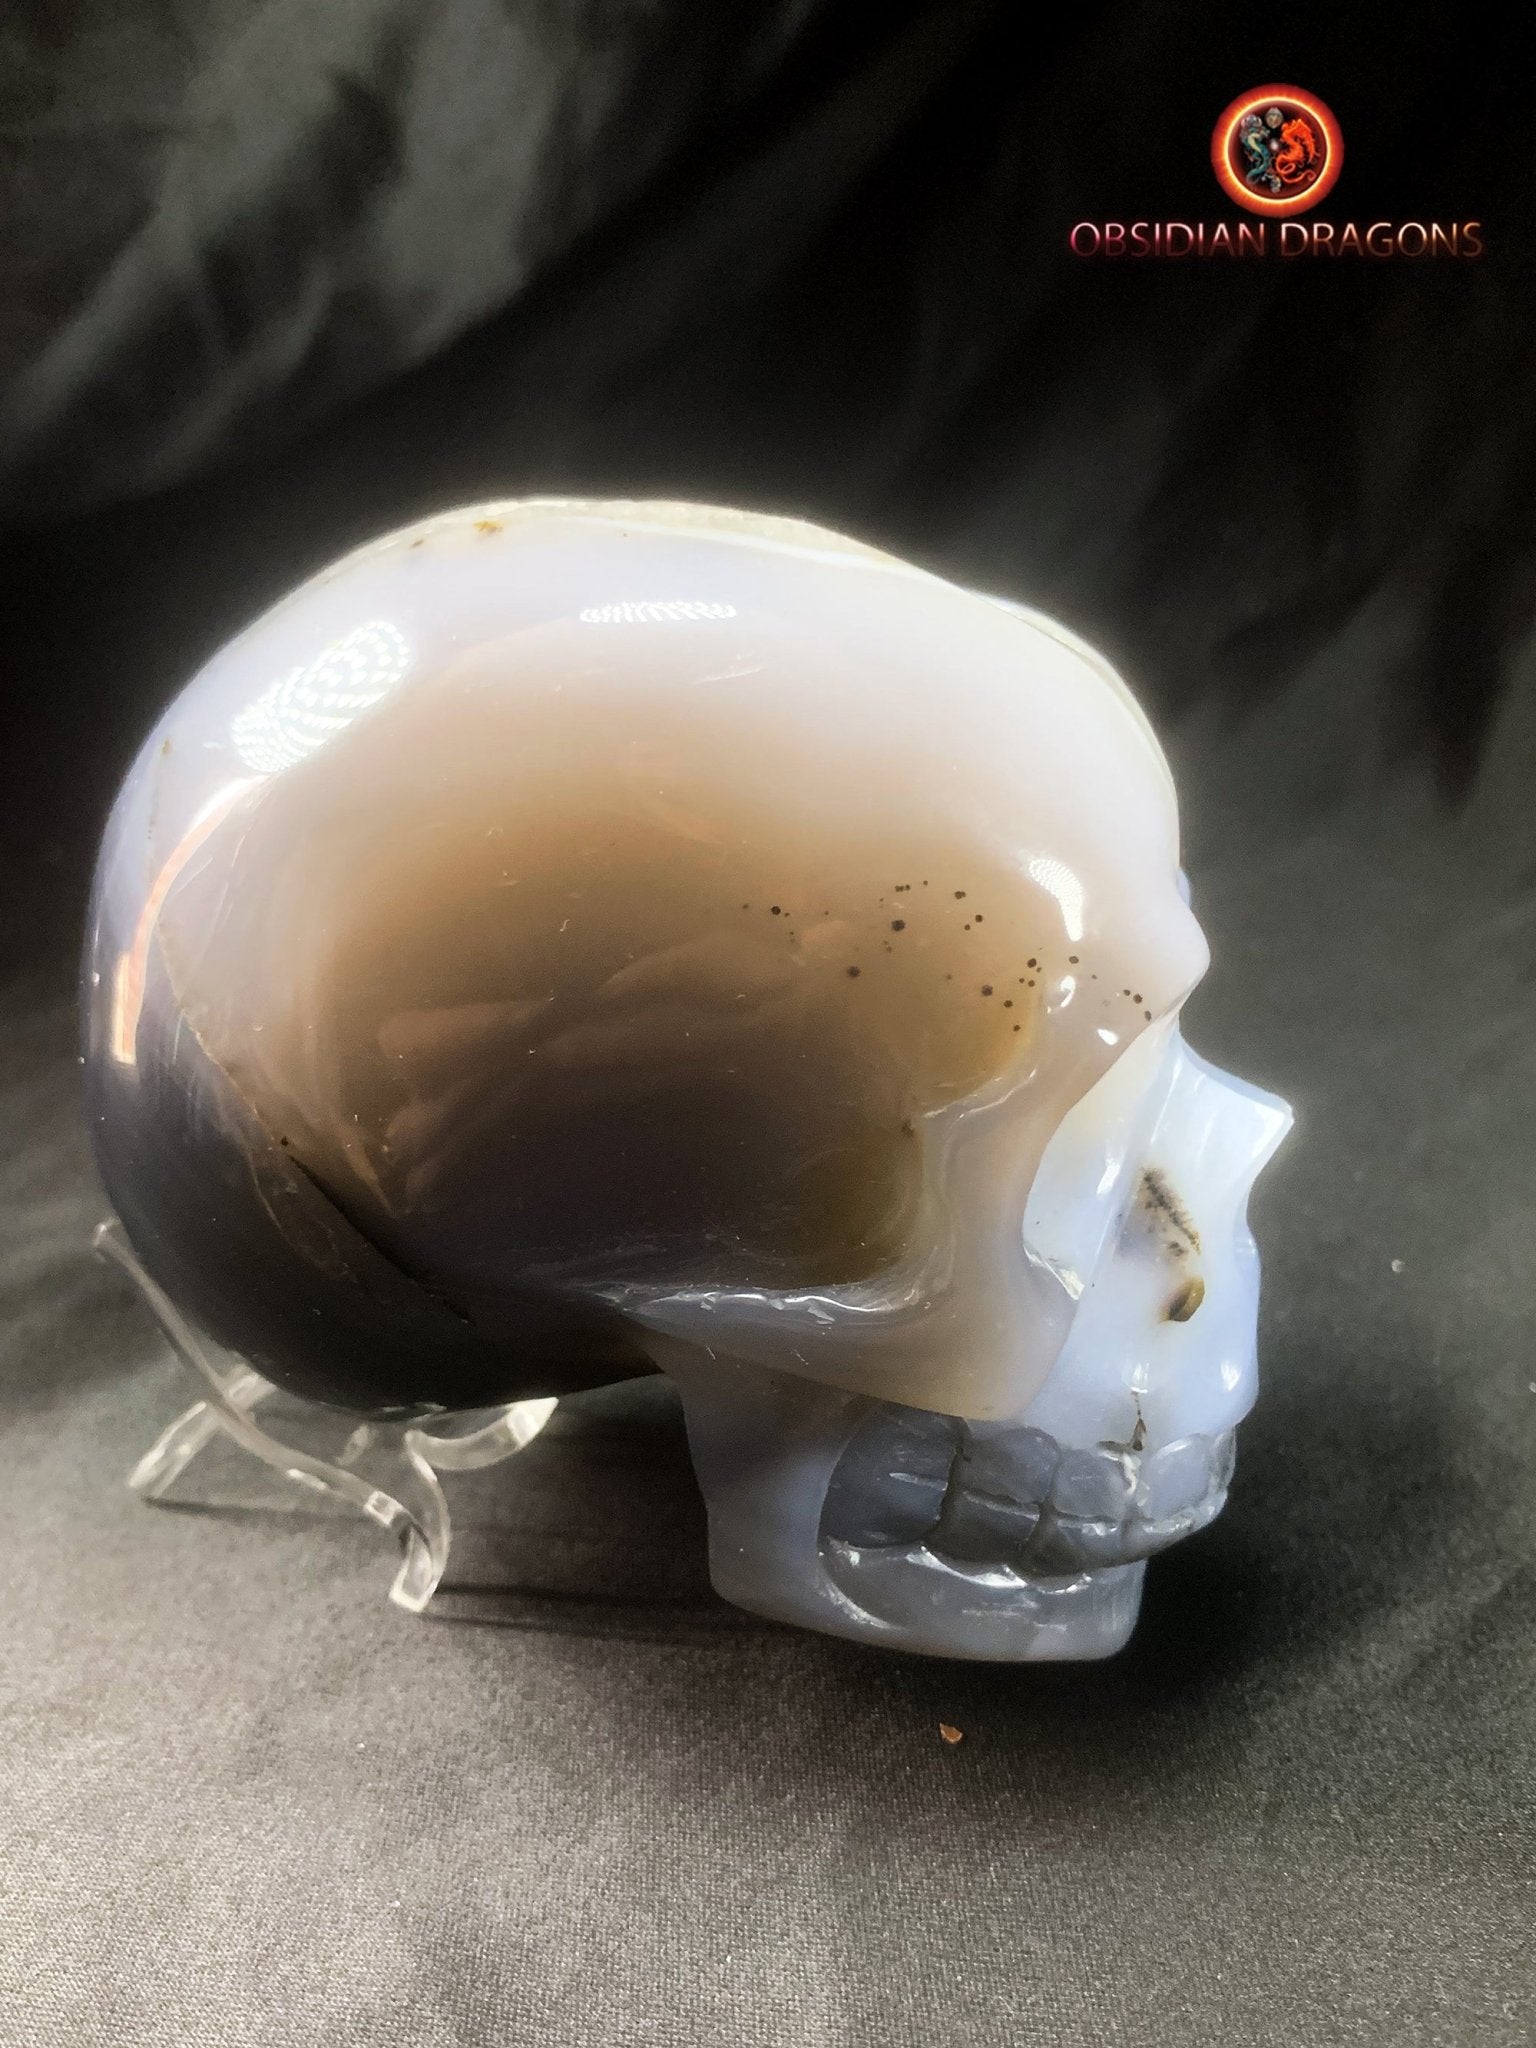 Crâne de cristal sculpté dans une géode de quartz | obsidian dragons